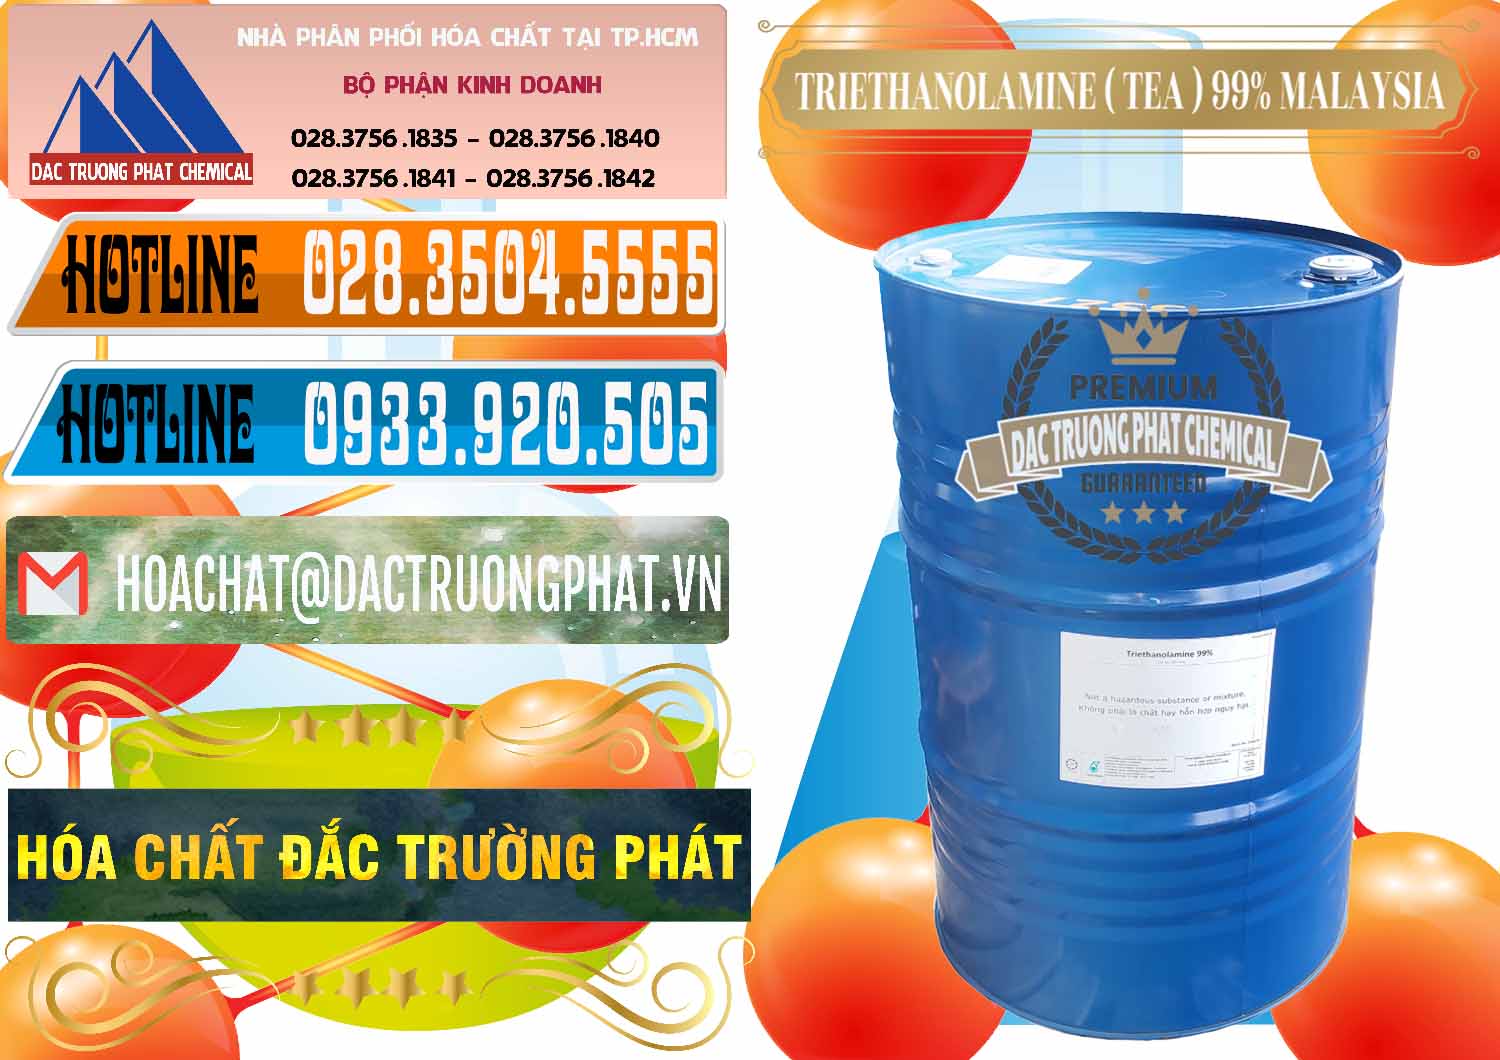 Chuyên bán - cung cấp TEA - Triethanolamine 99% Mã Lai Malaysia - 0323 - Chuyên phân phối & cung cấp hóa chất tại TP.HCM - stmp.net